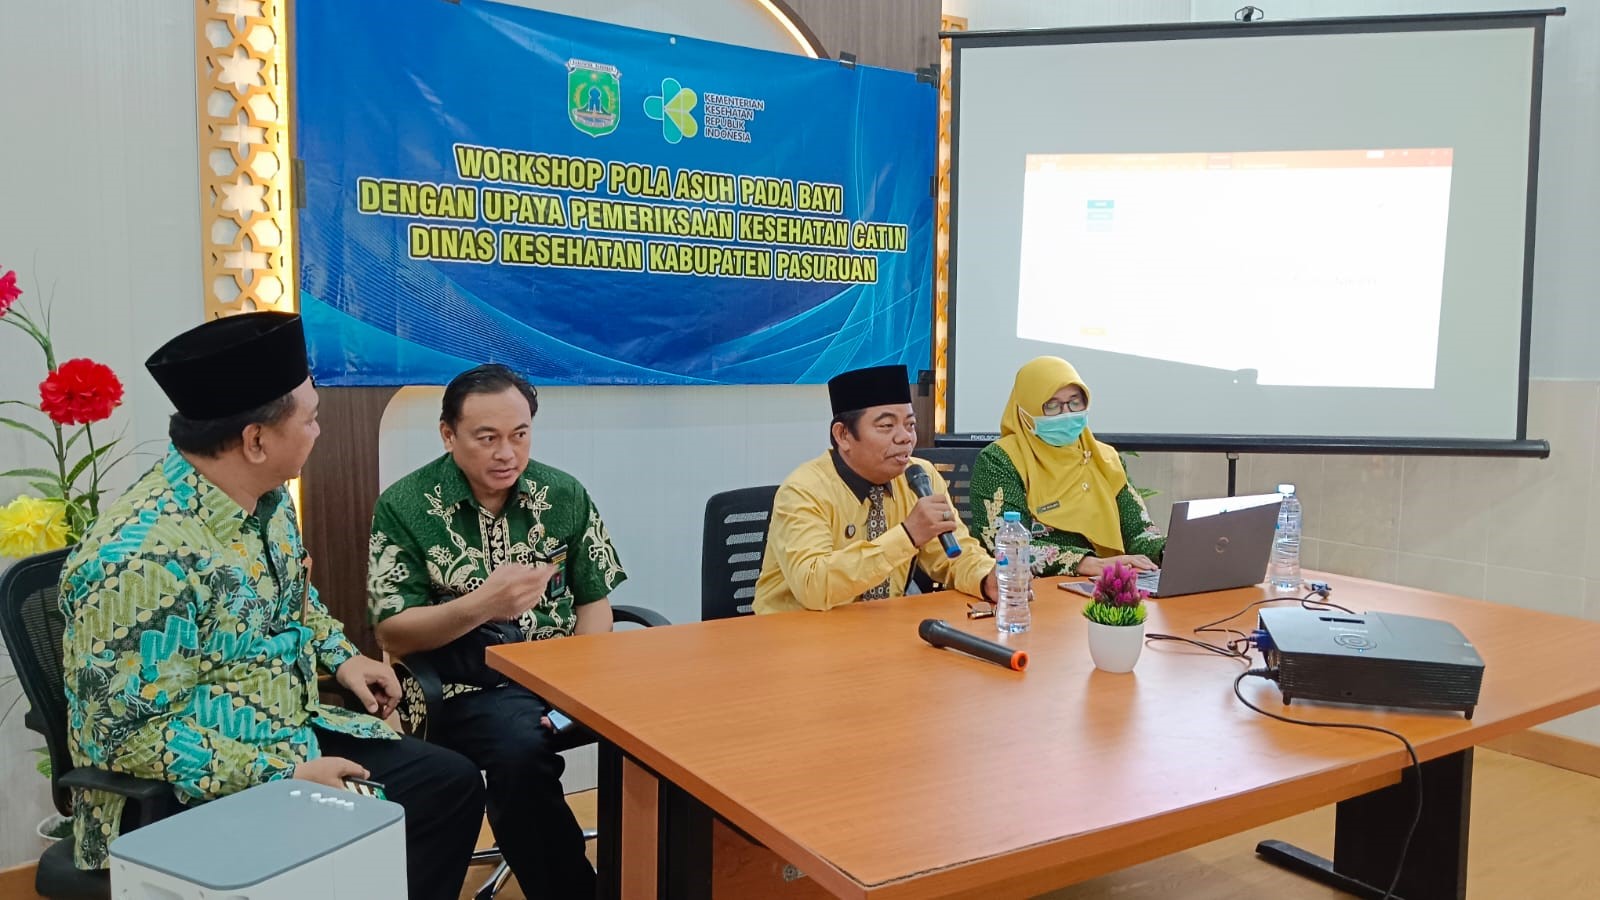 Senada Cegah Pernikahan Dini dan Stunting PA Bangil ikuti Workshop bersama Dinas Kesehatan dan Kemenag Kabupaten Pasuruan